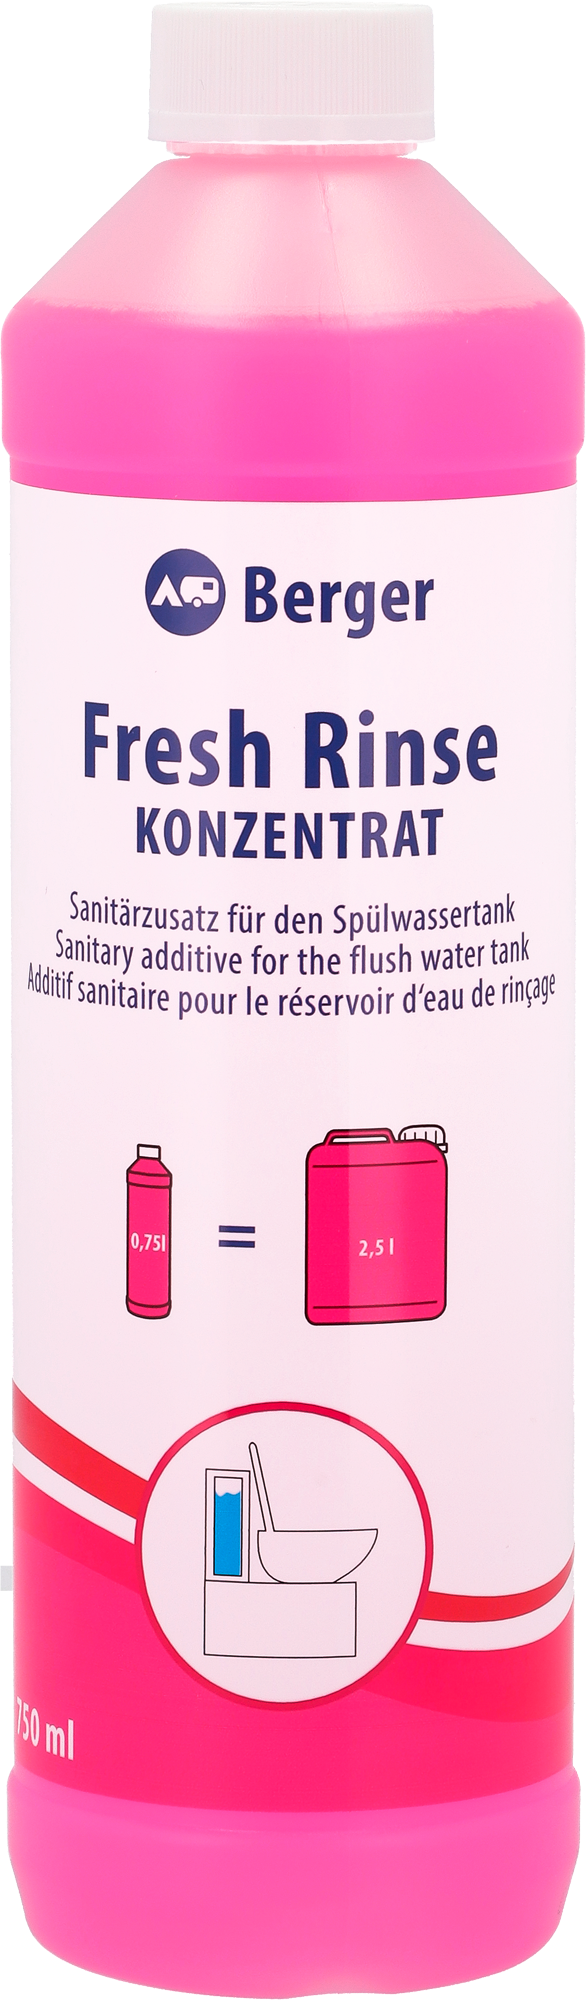 Berger Fresh Rinse Konzentrat 750 ml - Sanitärzusatz für den Spülwassertank